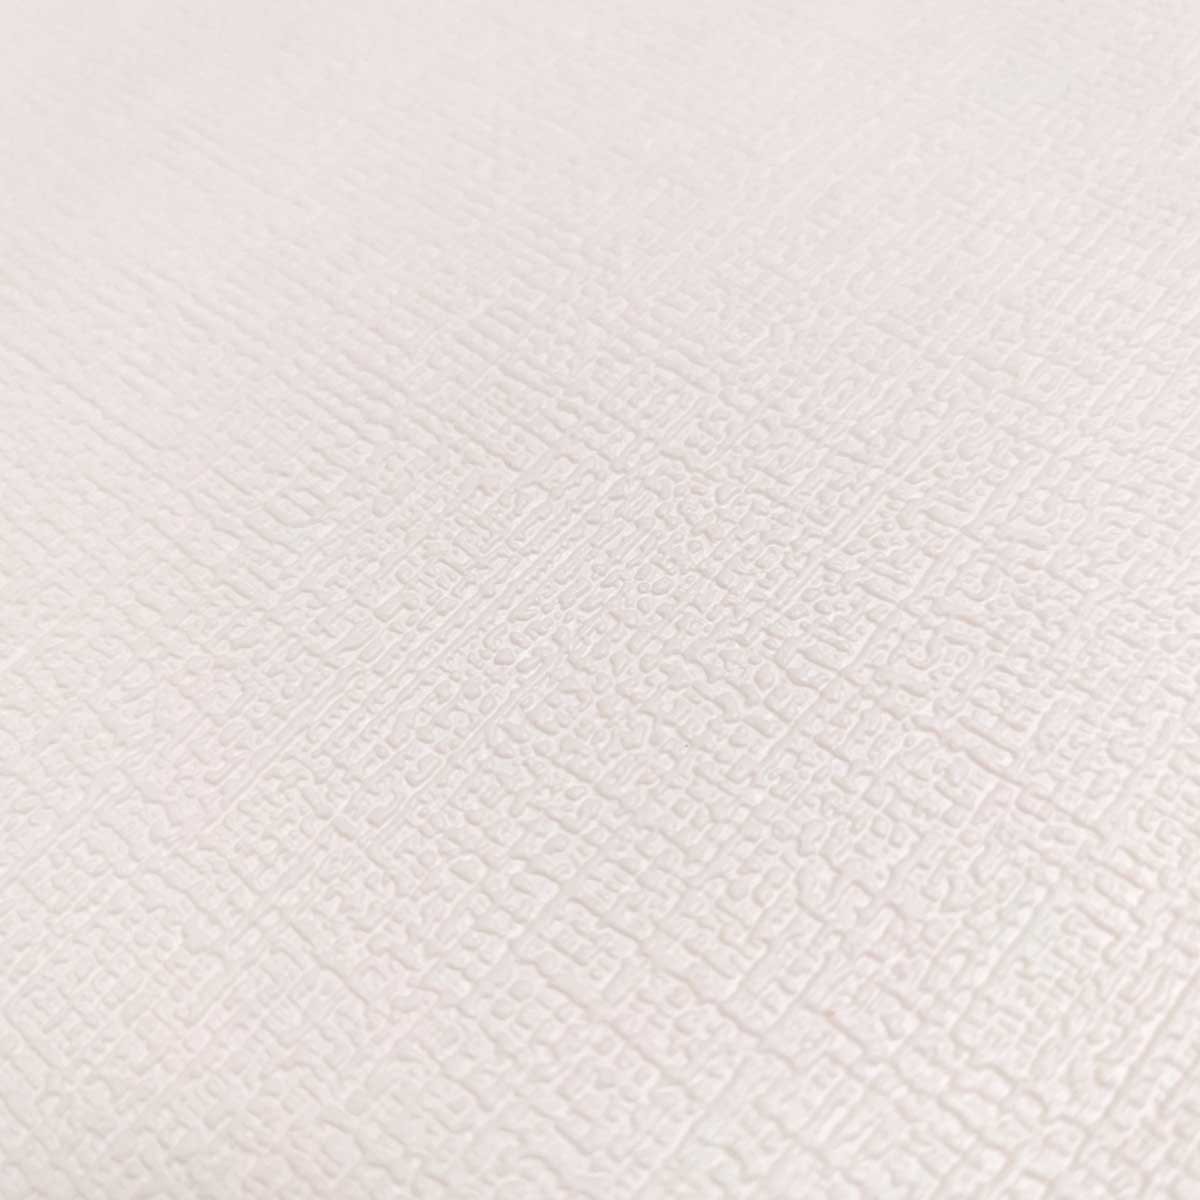 Текстурные самоклеющиеся обои белые YM-01 500x2800x2мм. (1,4 м²/рул.) - фото 1